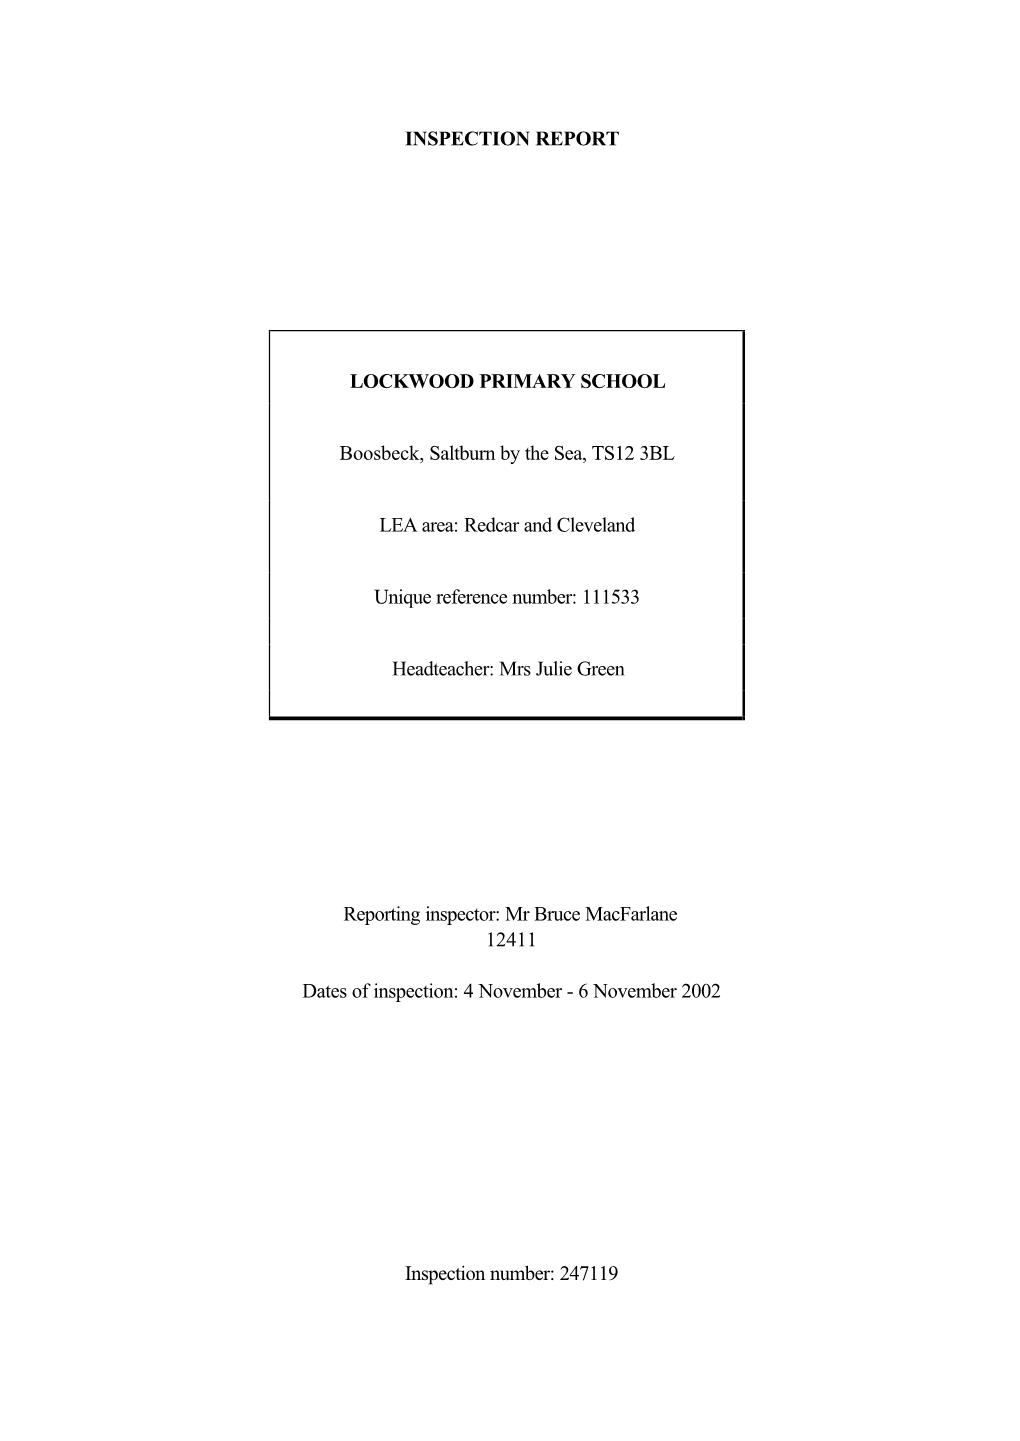 INSPECTION REPORT LOCKWOOD PRIMARY SCHOOL Boosbeck